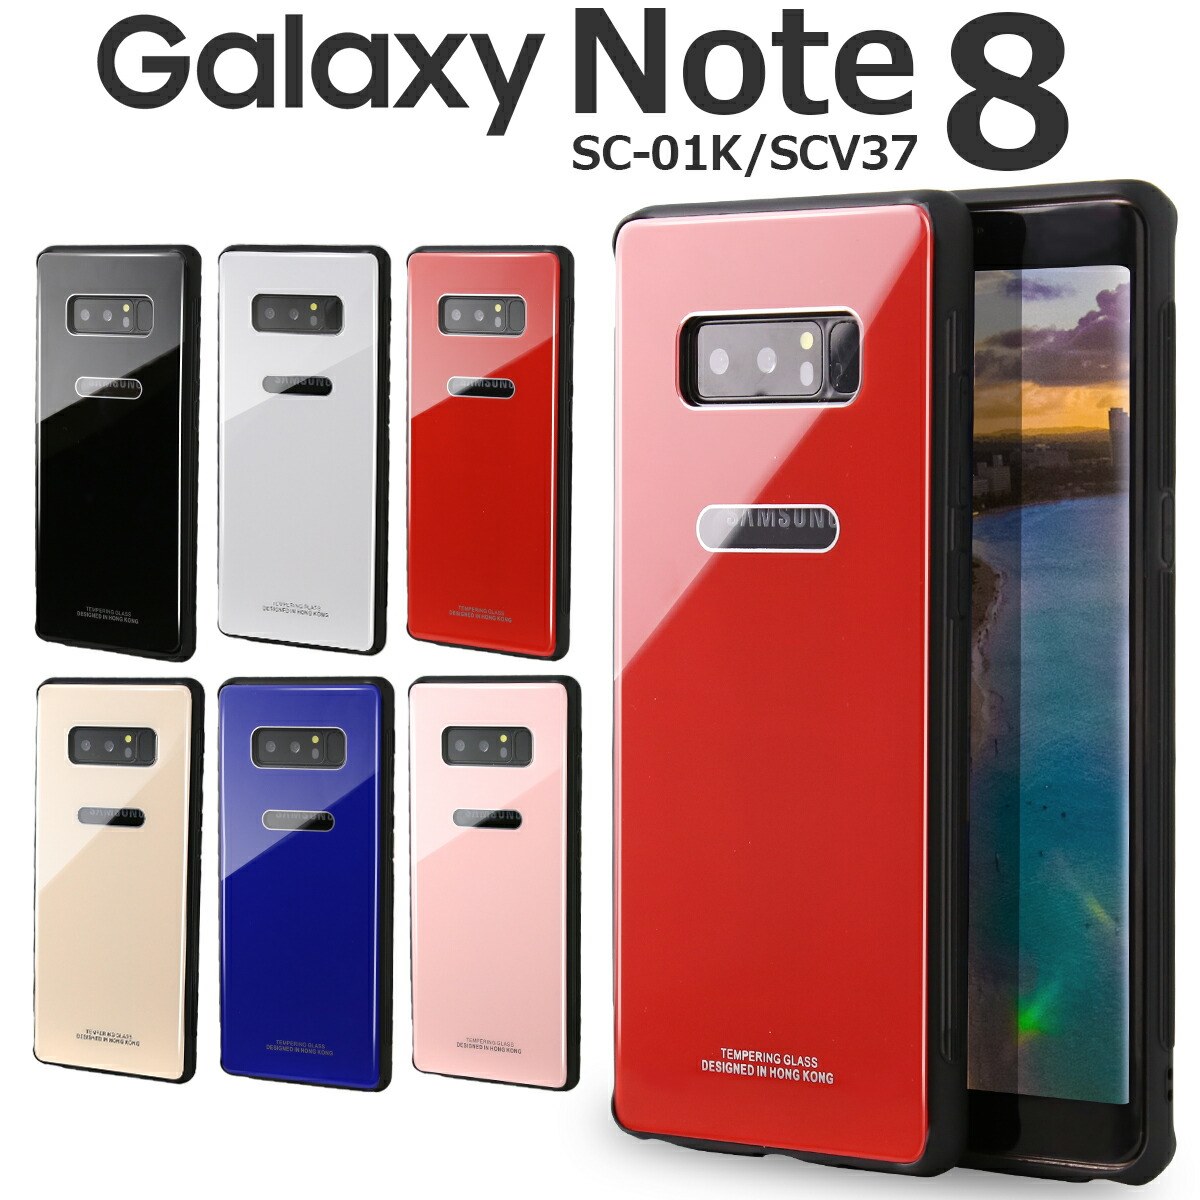 【最大30%offクーポン】Galaxy Note8 ケース Galaxy Note8 カバー Galaxy Note8 sc-01k ケース スマホケース 韓国 SC-01K SCV37 スマホ ケース カバー 背面9Hガラスケース クリスタルケース スマホケース かっこいい おしゃれ スマホカバー シンプル sale